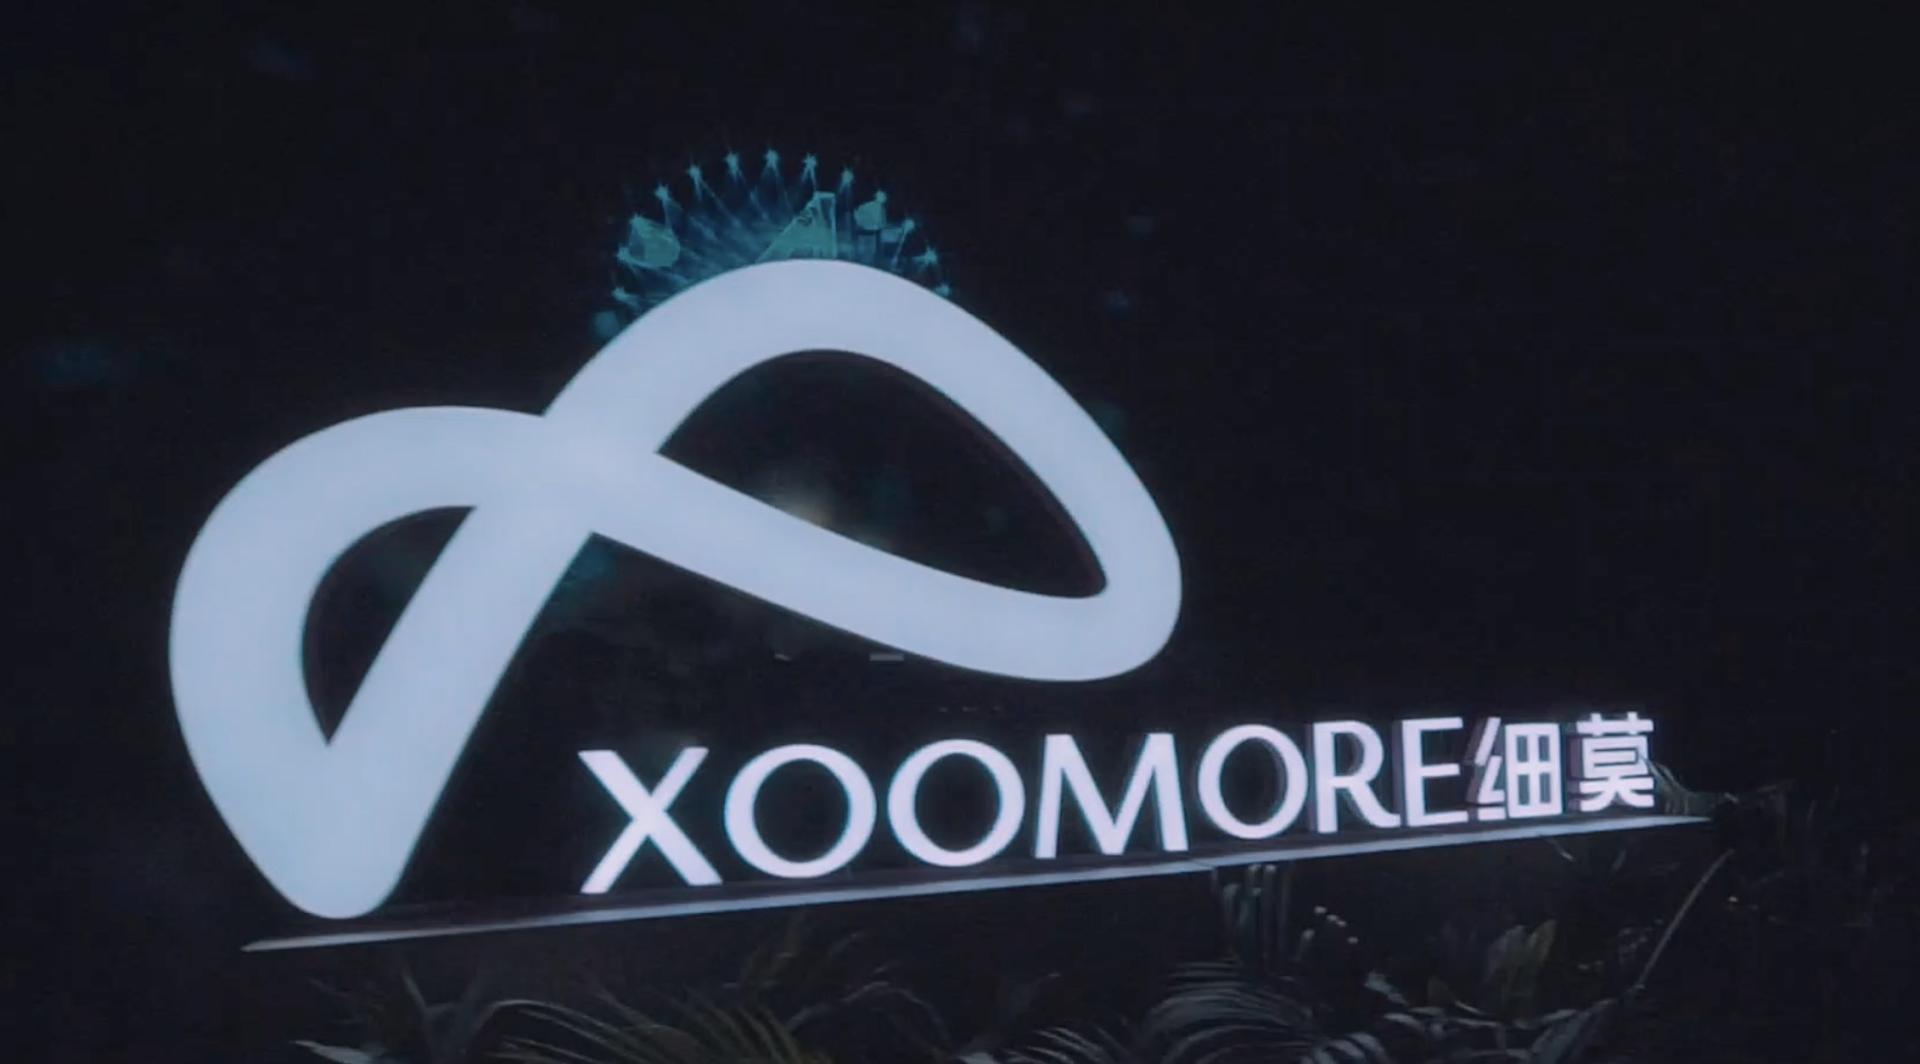 XOOMORE细莫新纪元智慧零售峰会议程